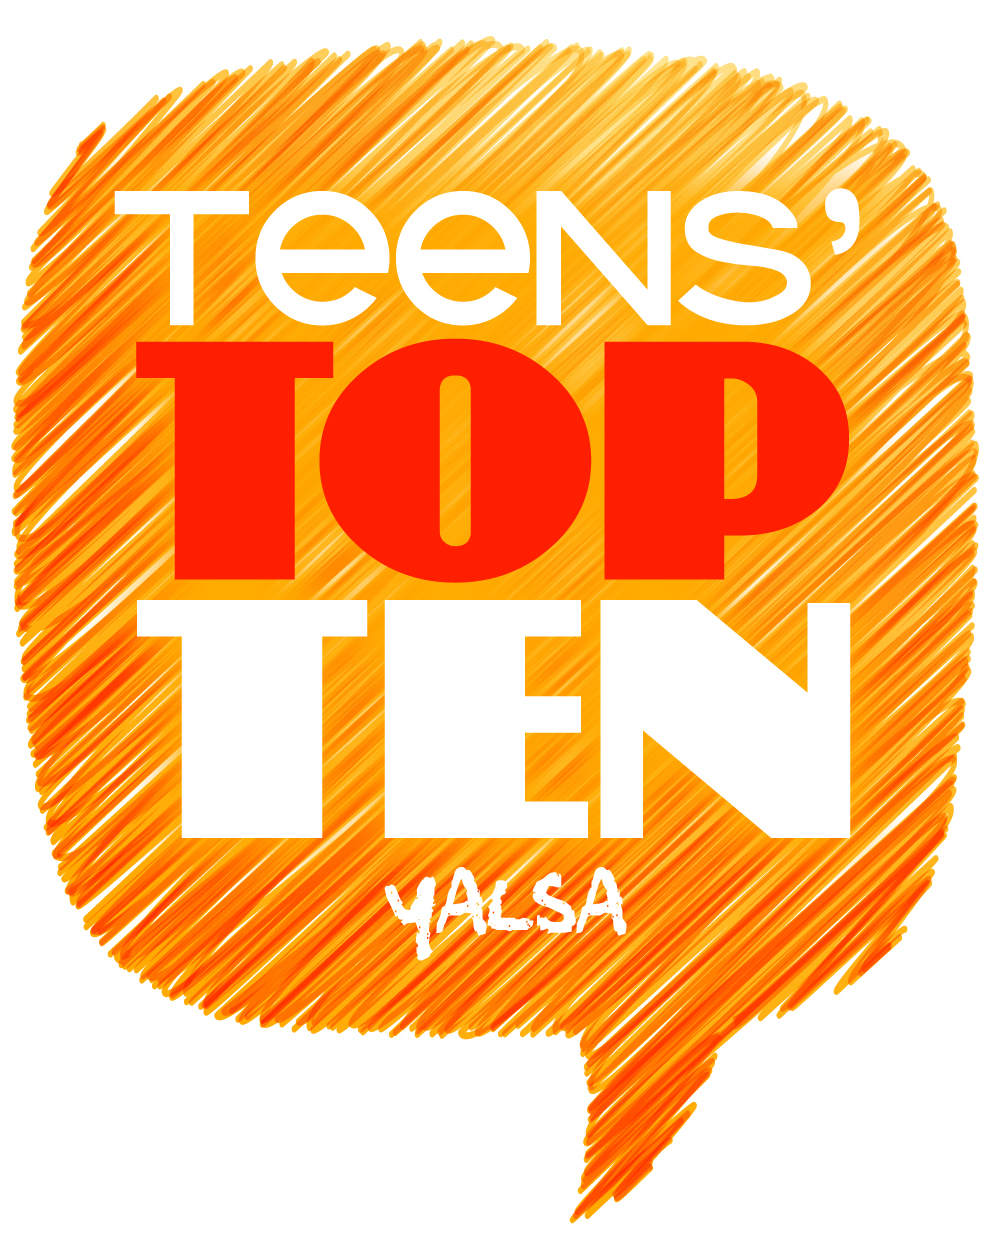 Top Ten Teen Websites